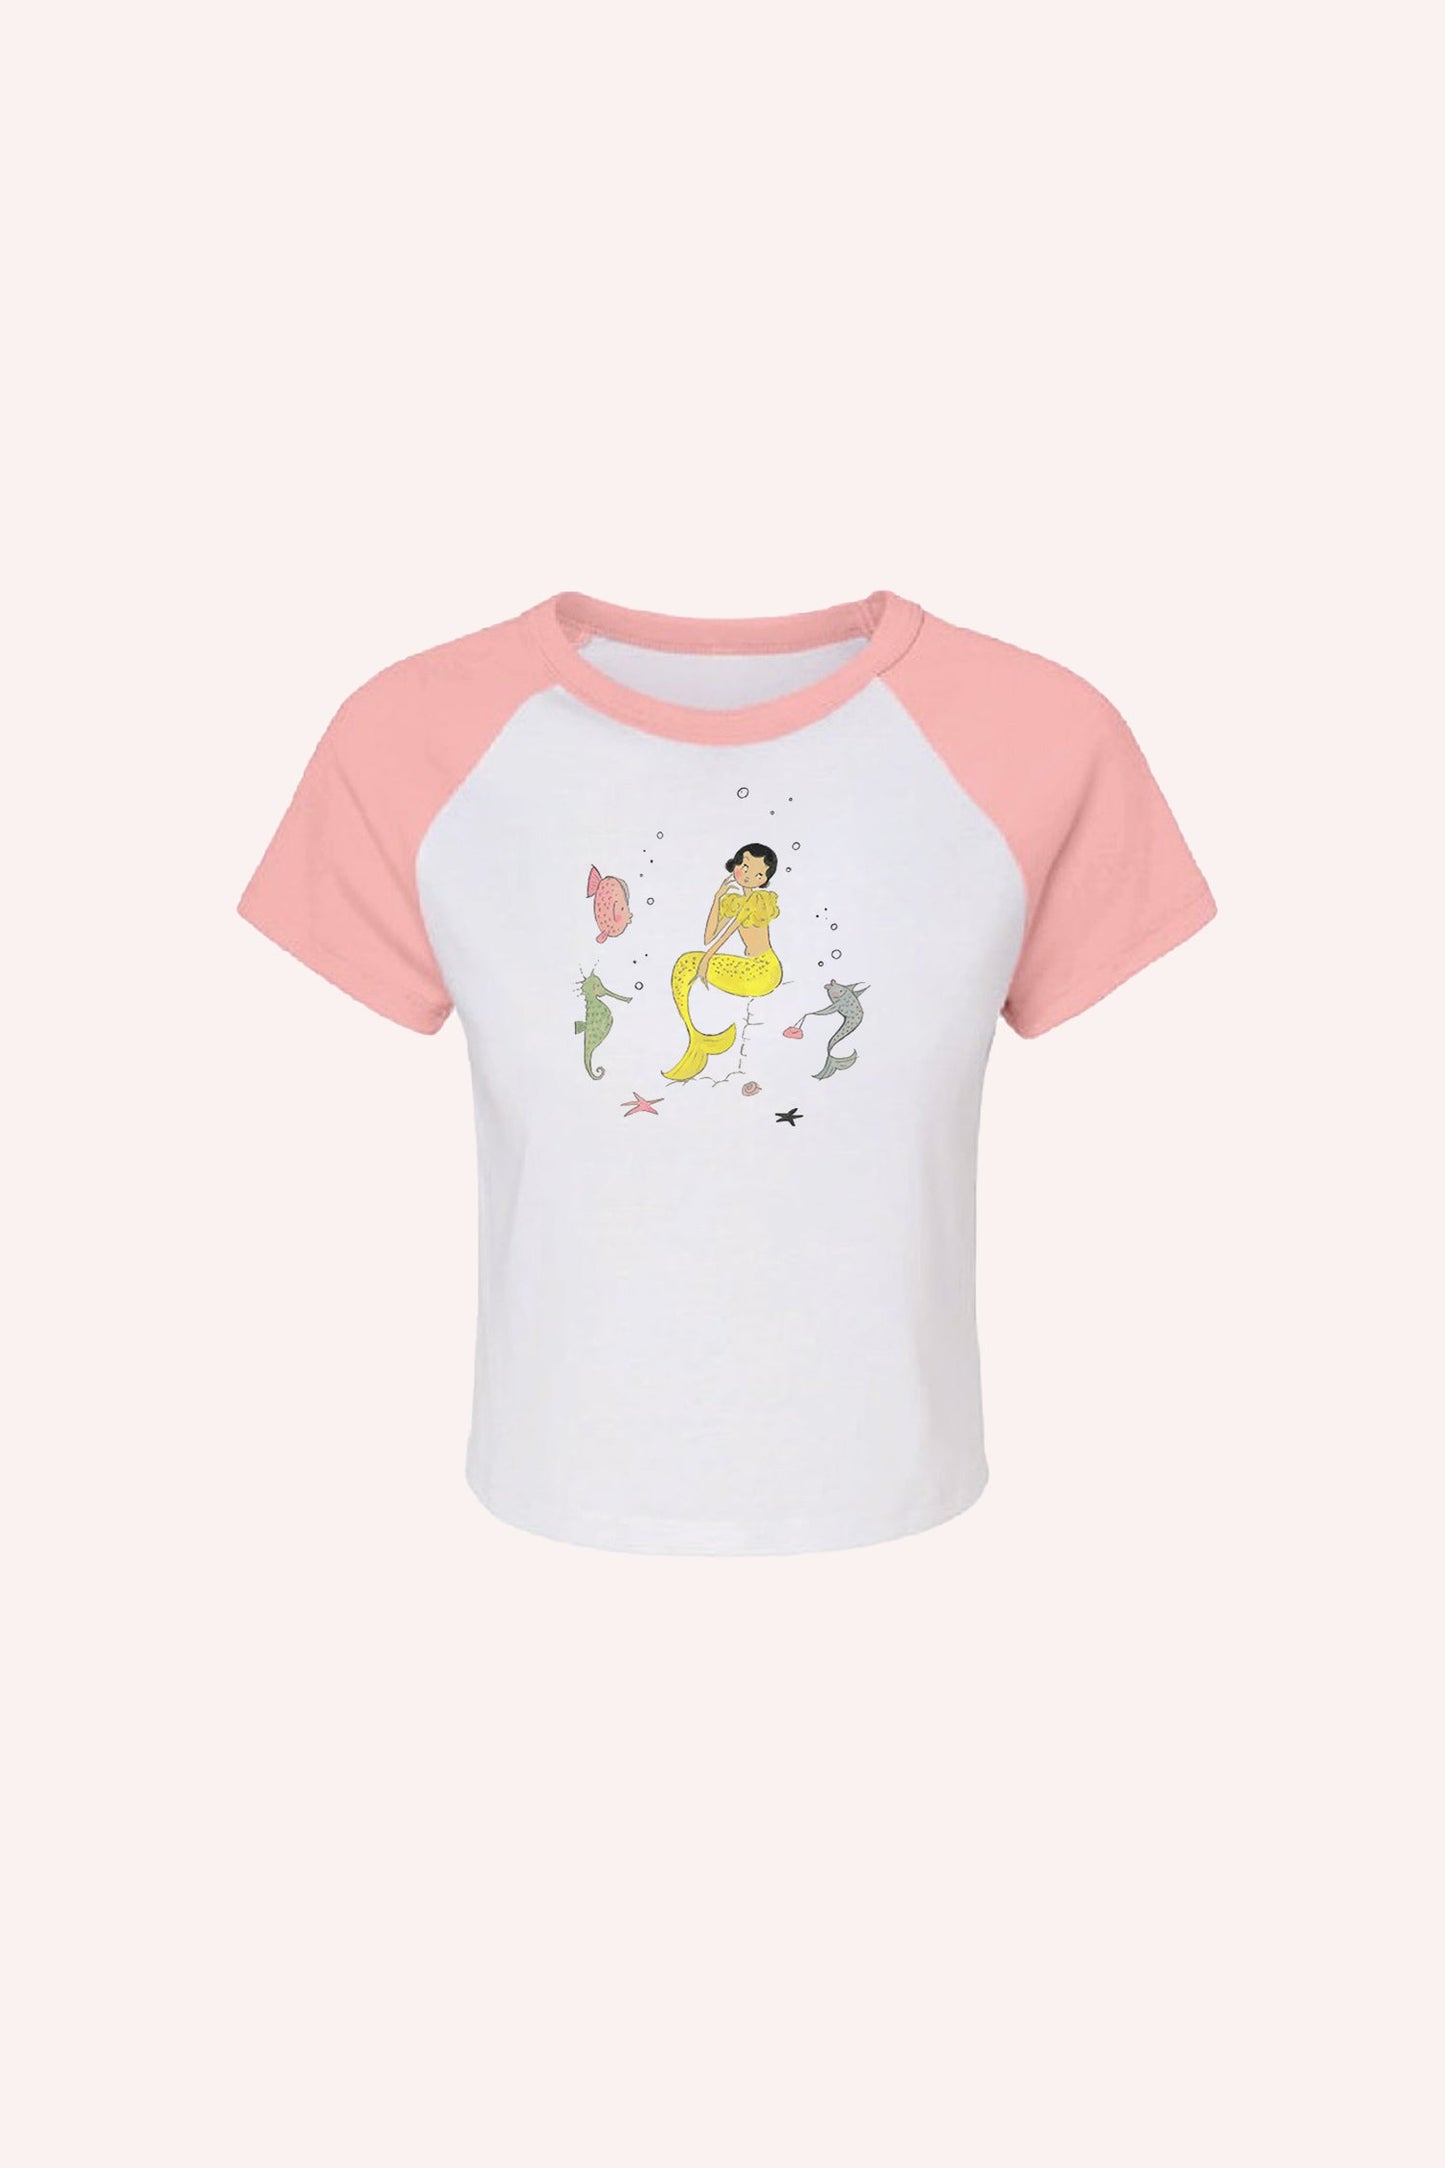 White Mermaid Raglan Baby Tee, Pink short sleeves, above hips, yellow mermaid & ocean design